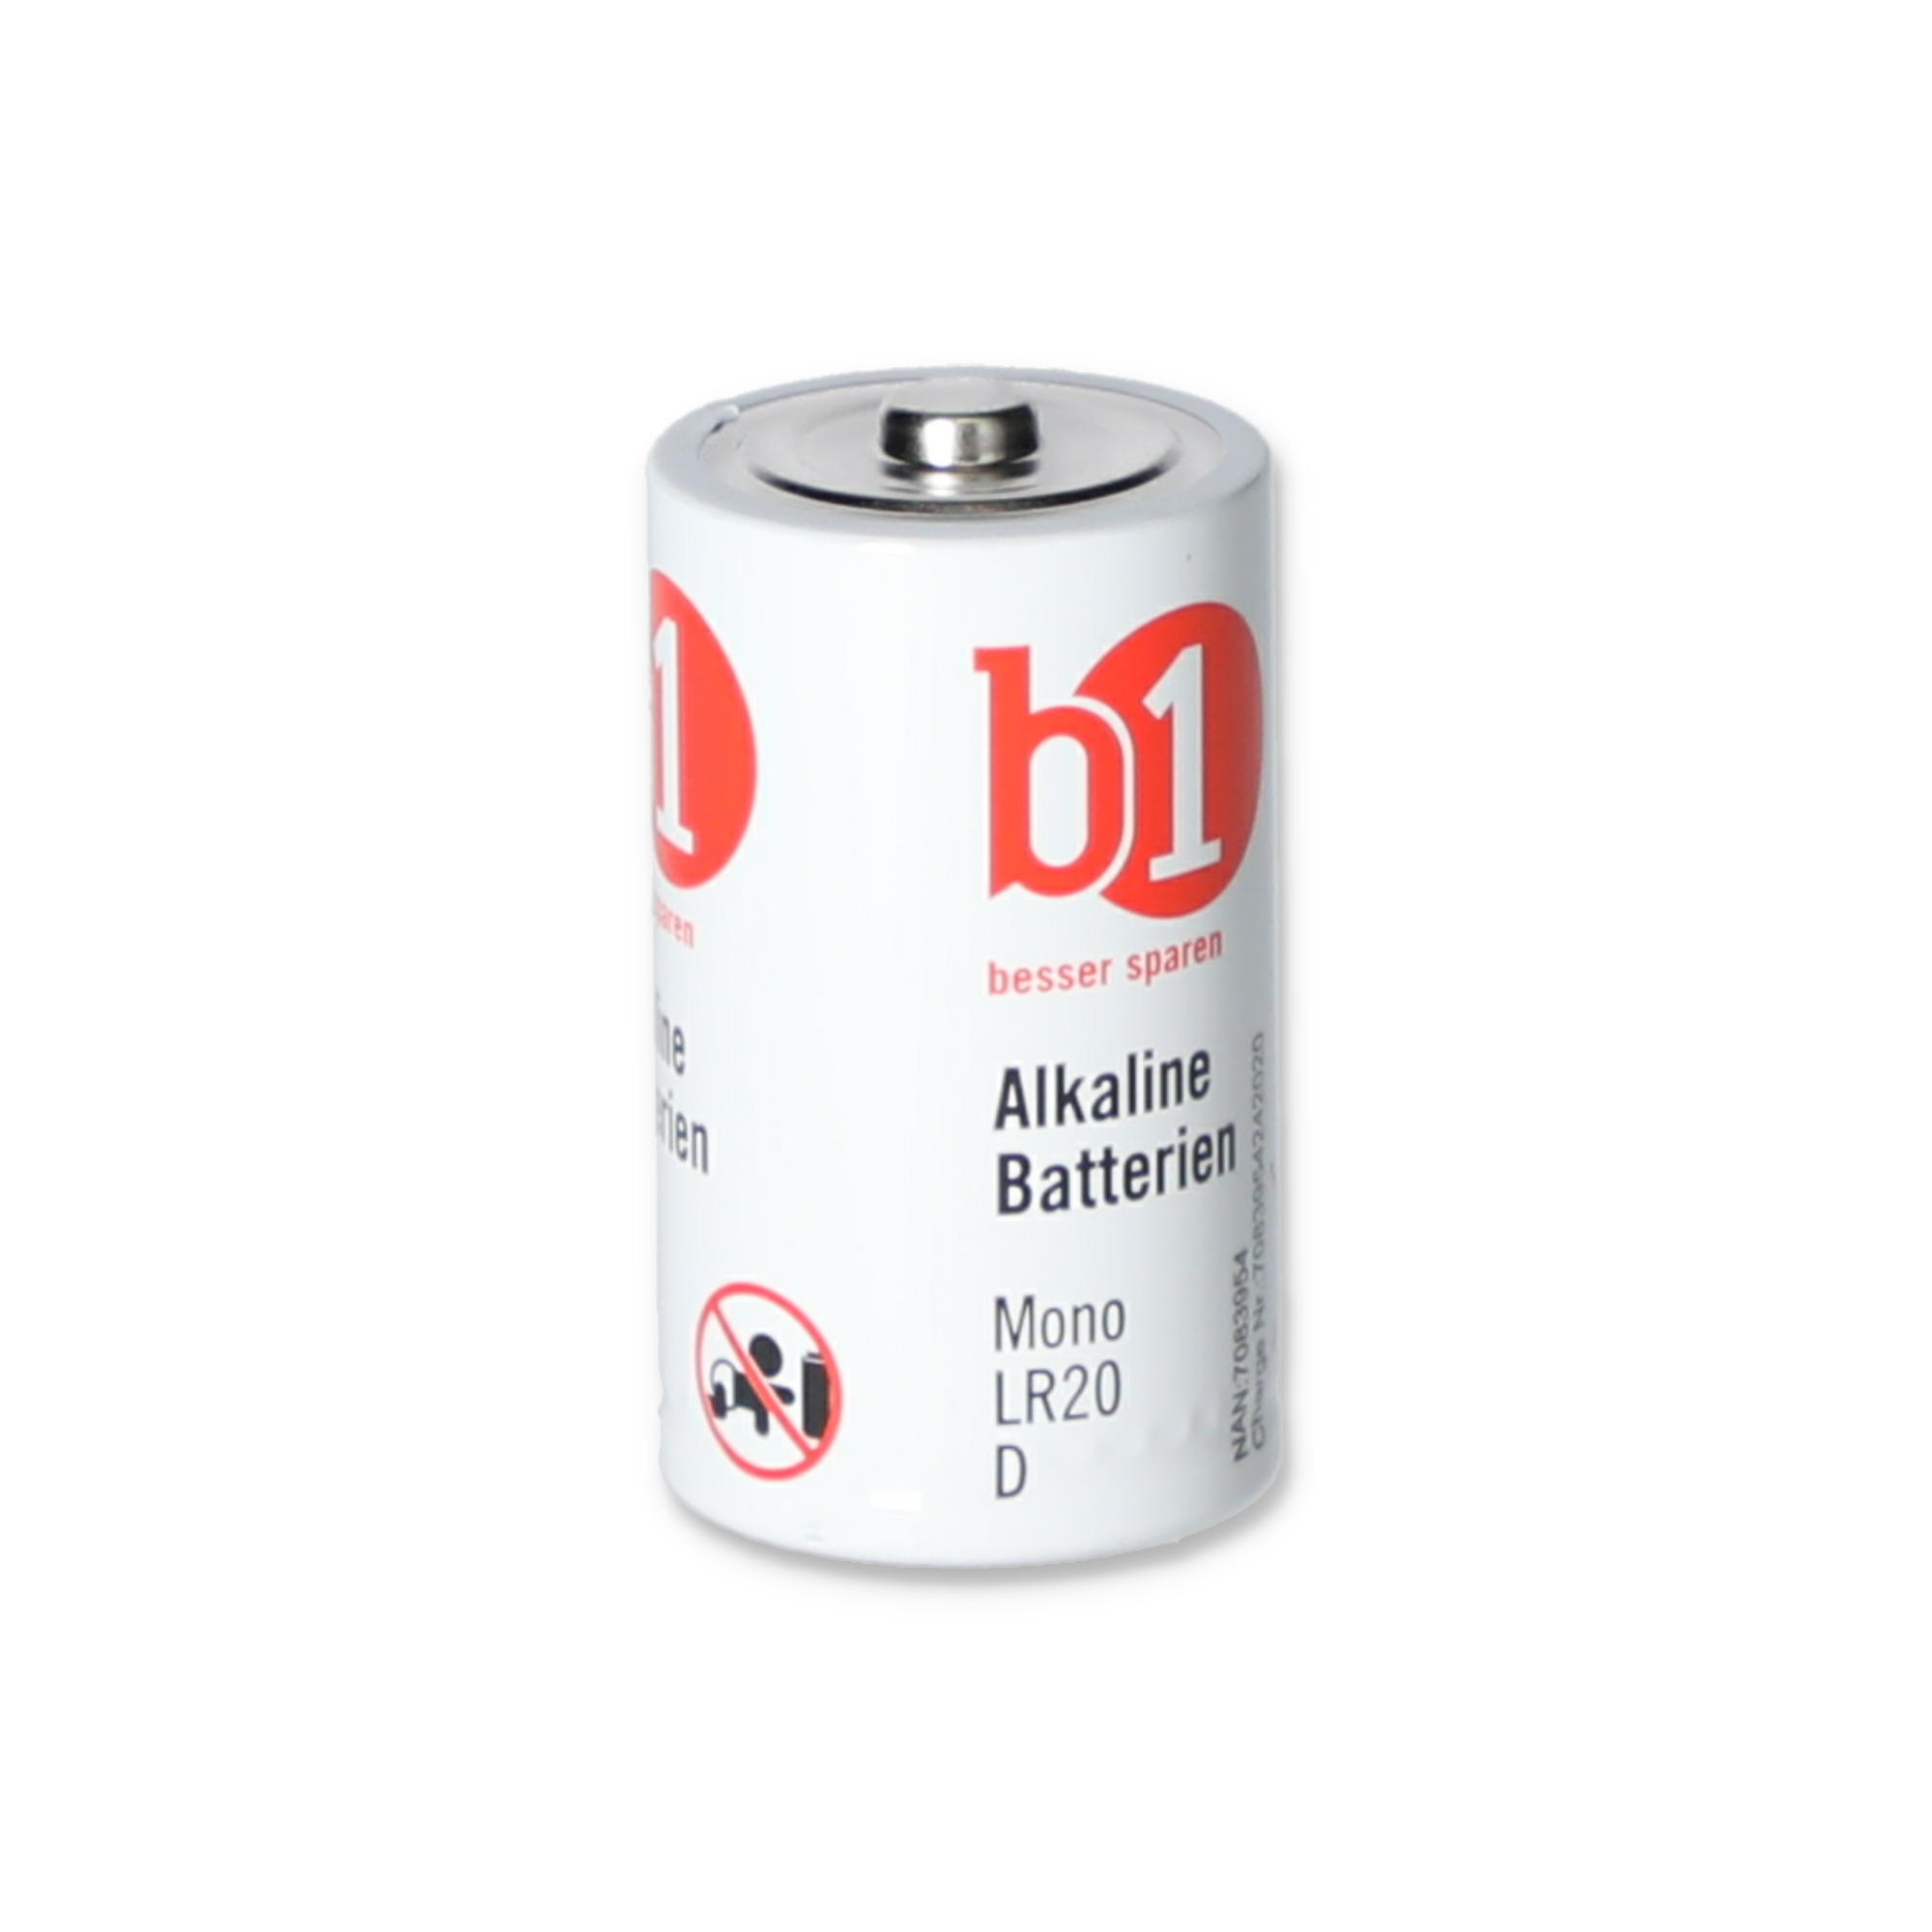 Mono-Batterien LR20 D 1,5 V, 4 Stück + product picture